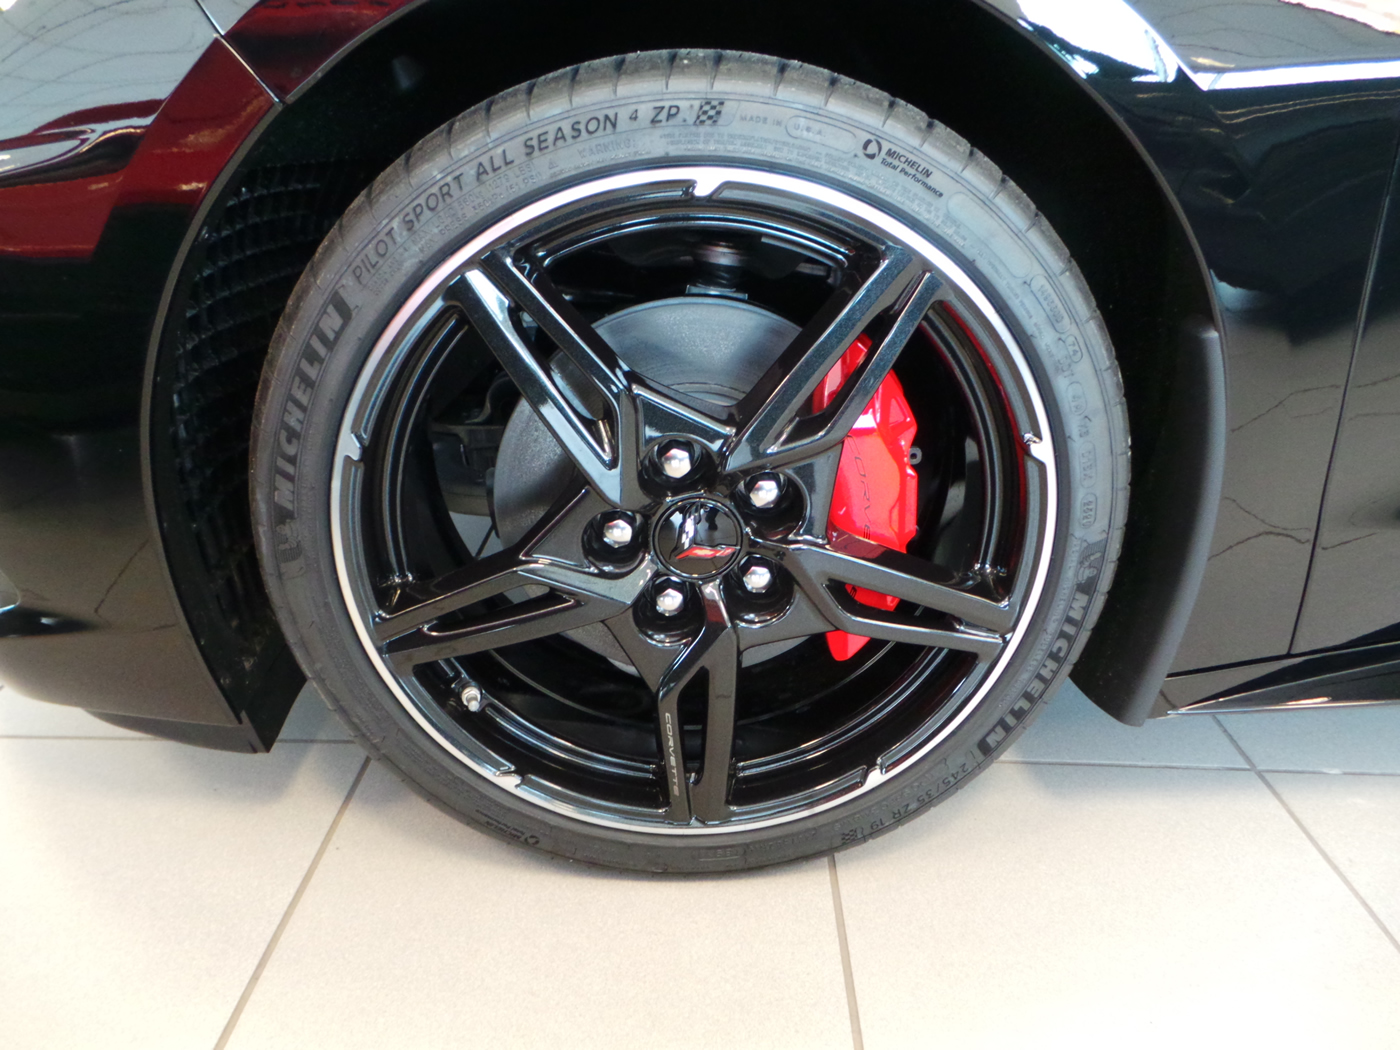 2020 Corvette Coupe in Black